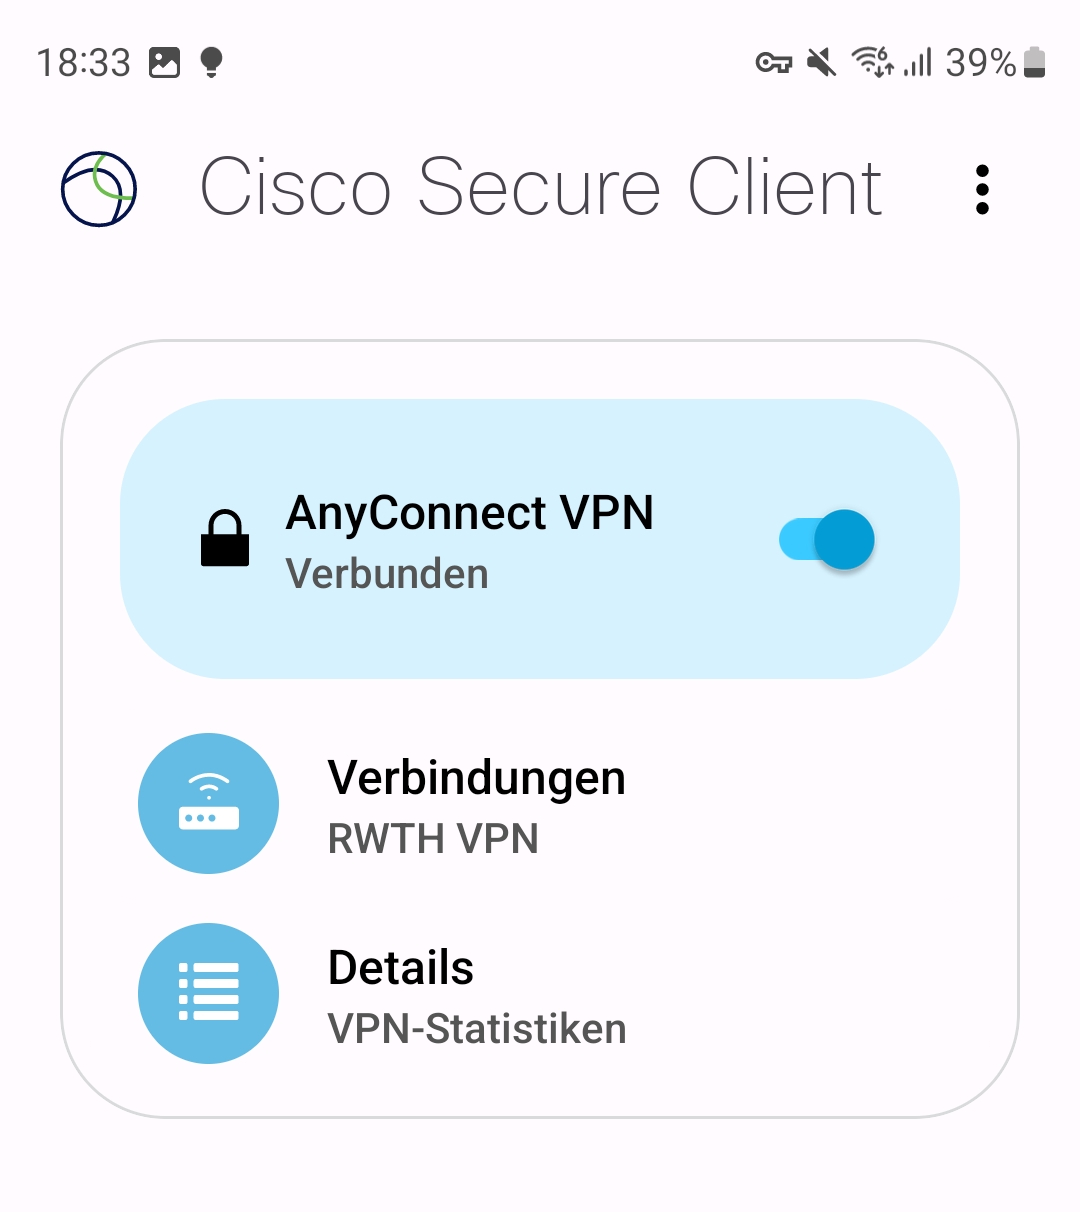 VPN is verbunden